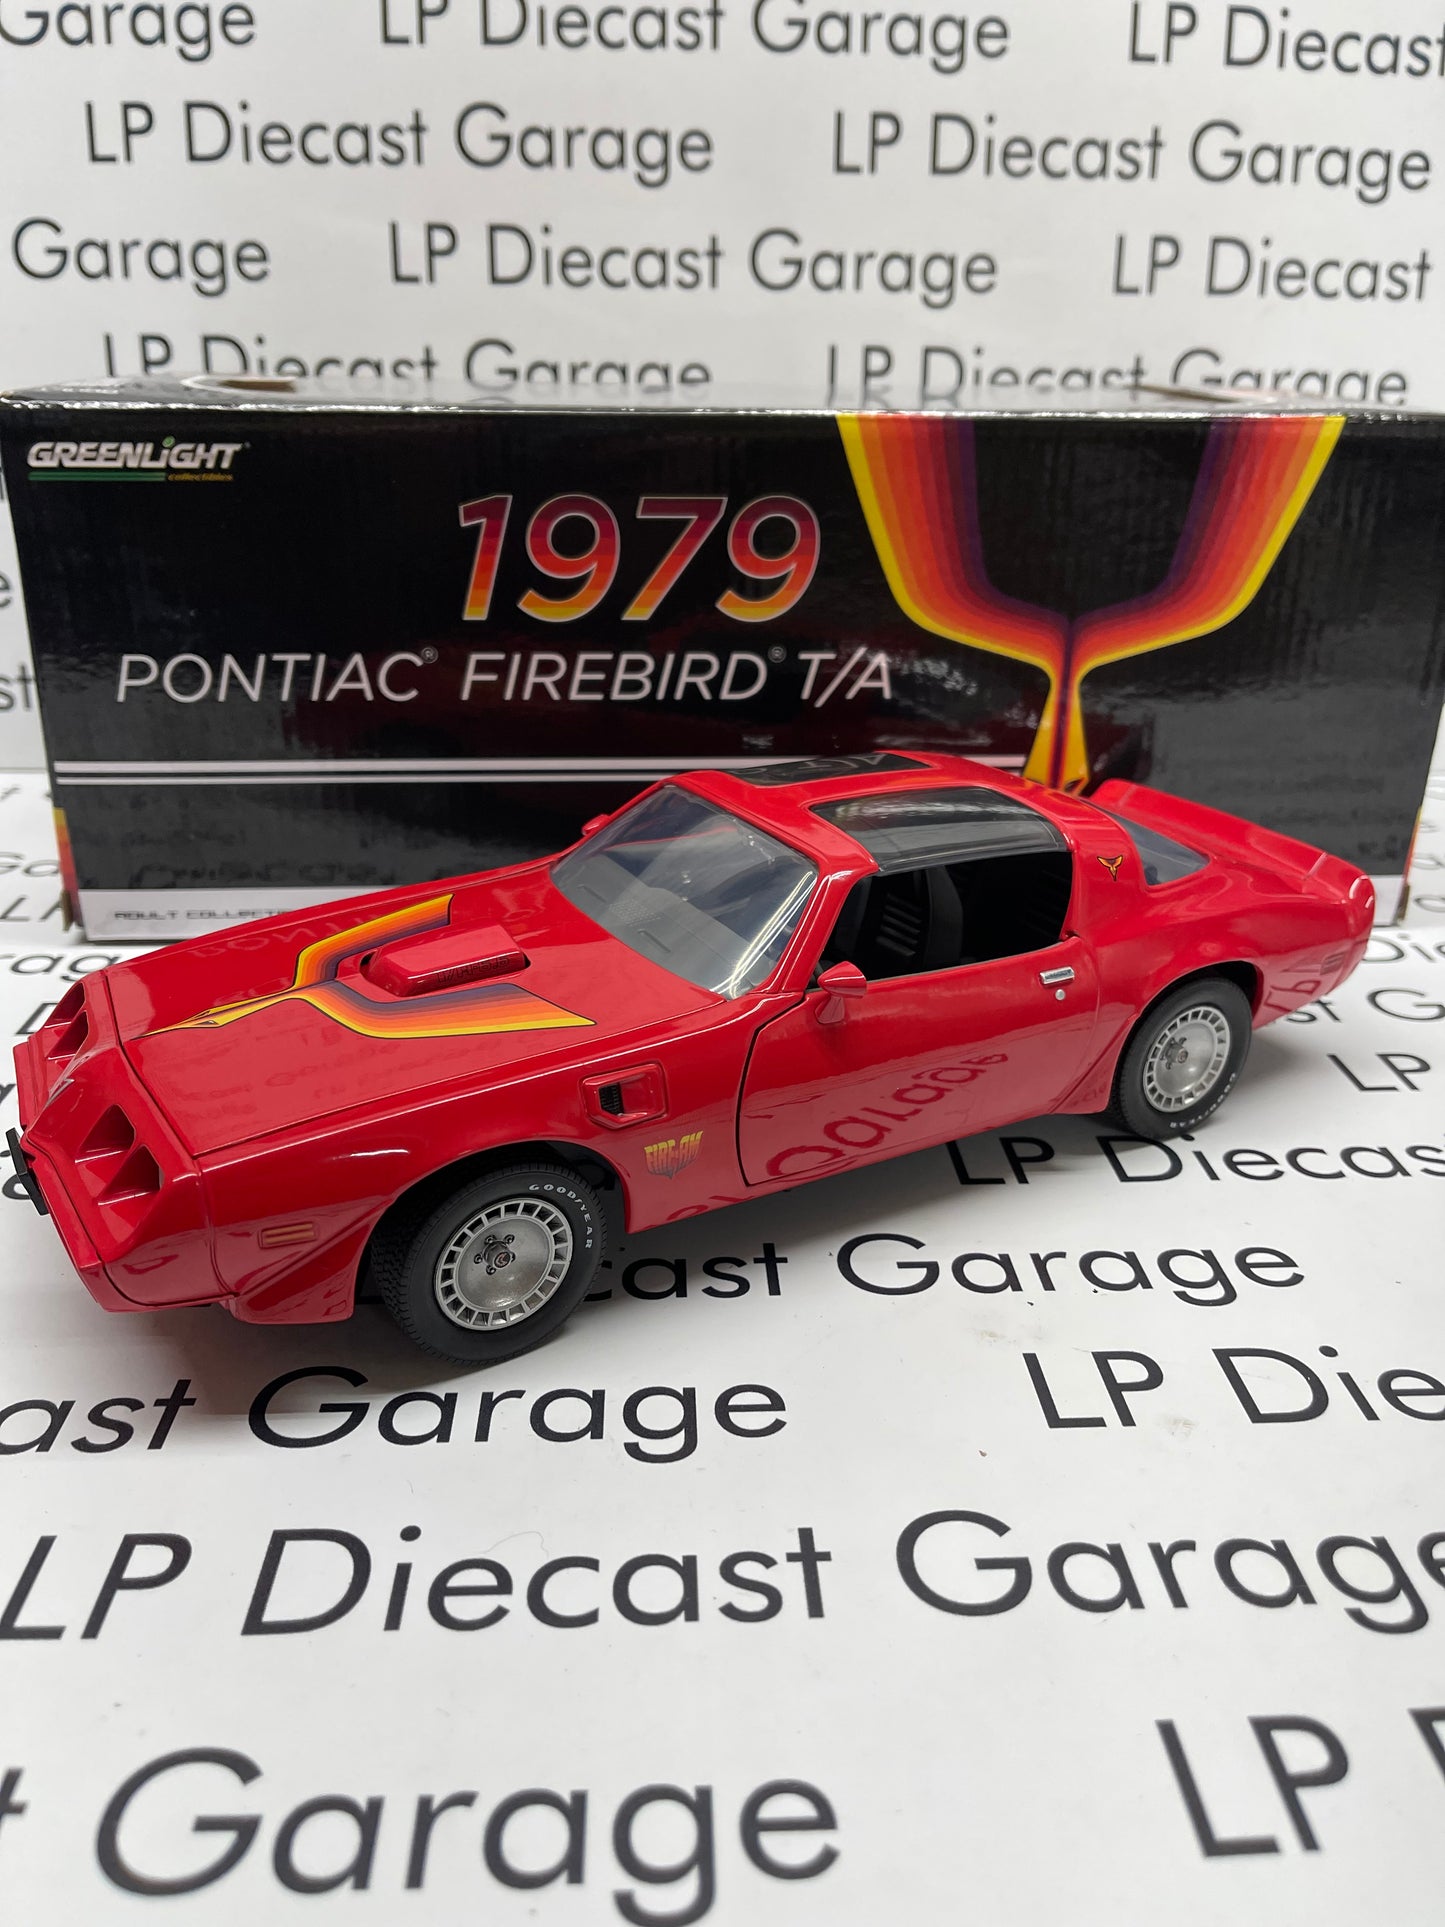 GREENLIGHT 1979 Pontiac Firebird Fire Am Special Red 1:18 Diecast